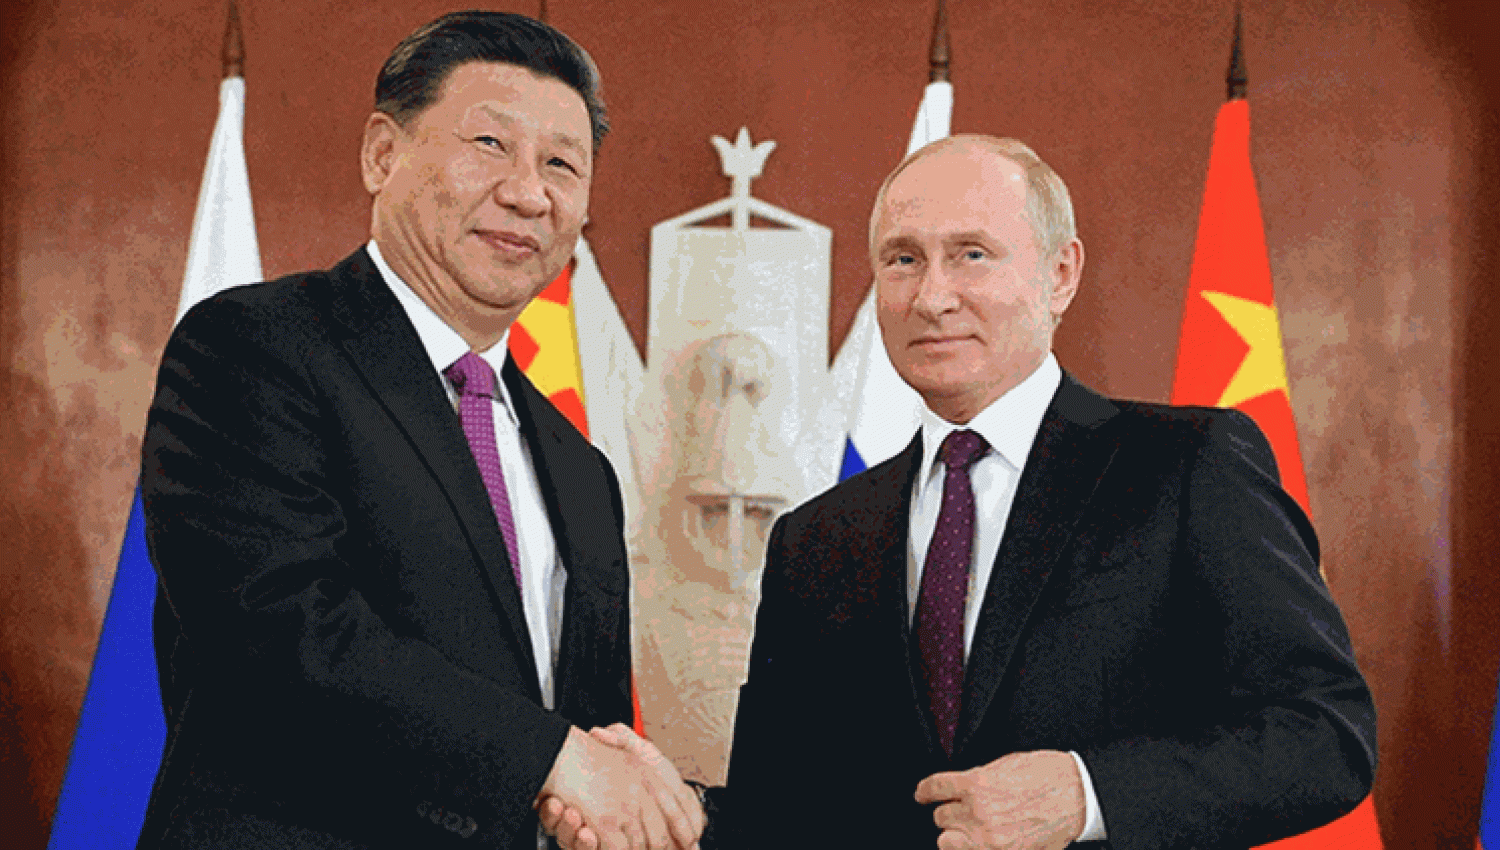 العلاقات الروسية-الصينية: تحالف استراتيجي تاريخي غير مسبوق!